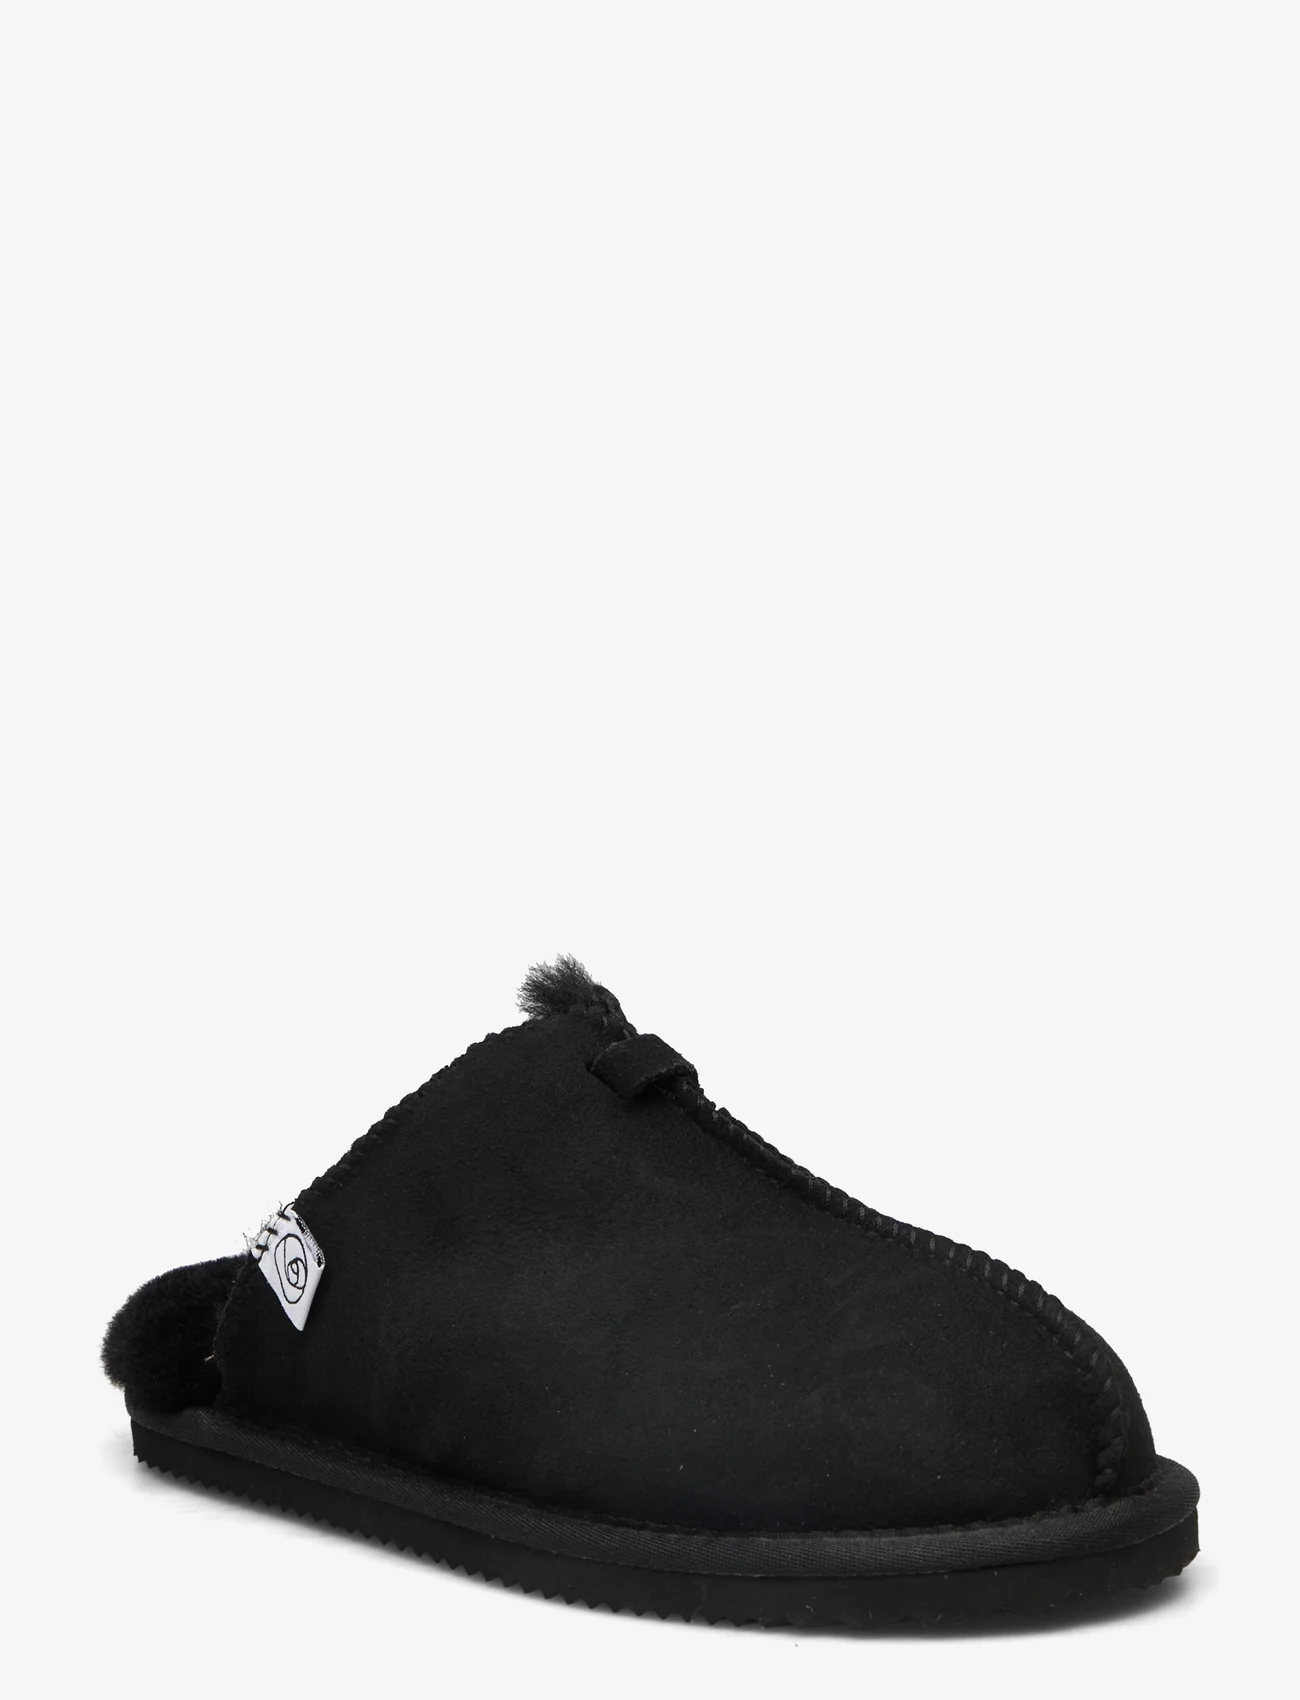 Rosemunde - Shearling slippers - bursdagsgaver - black - 0